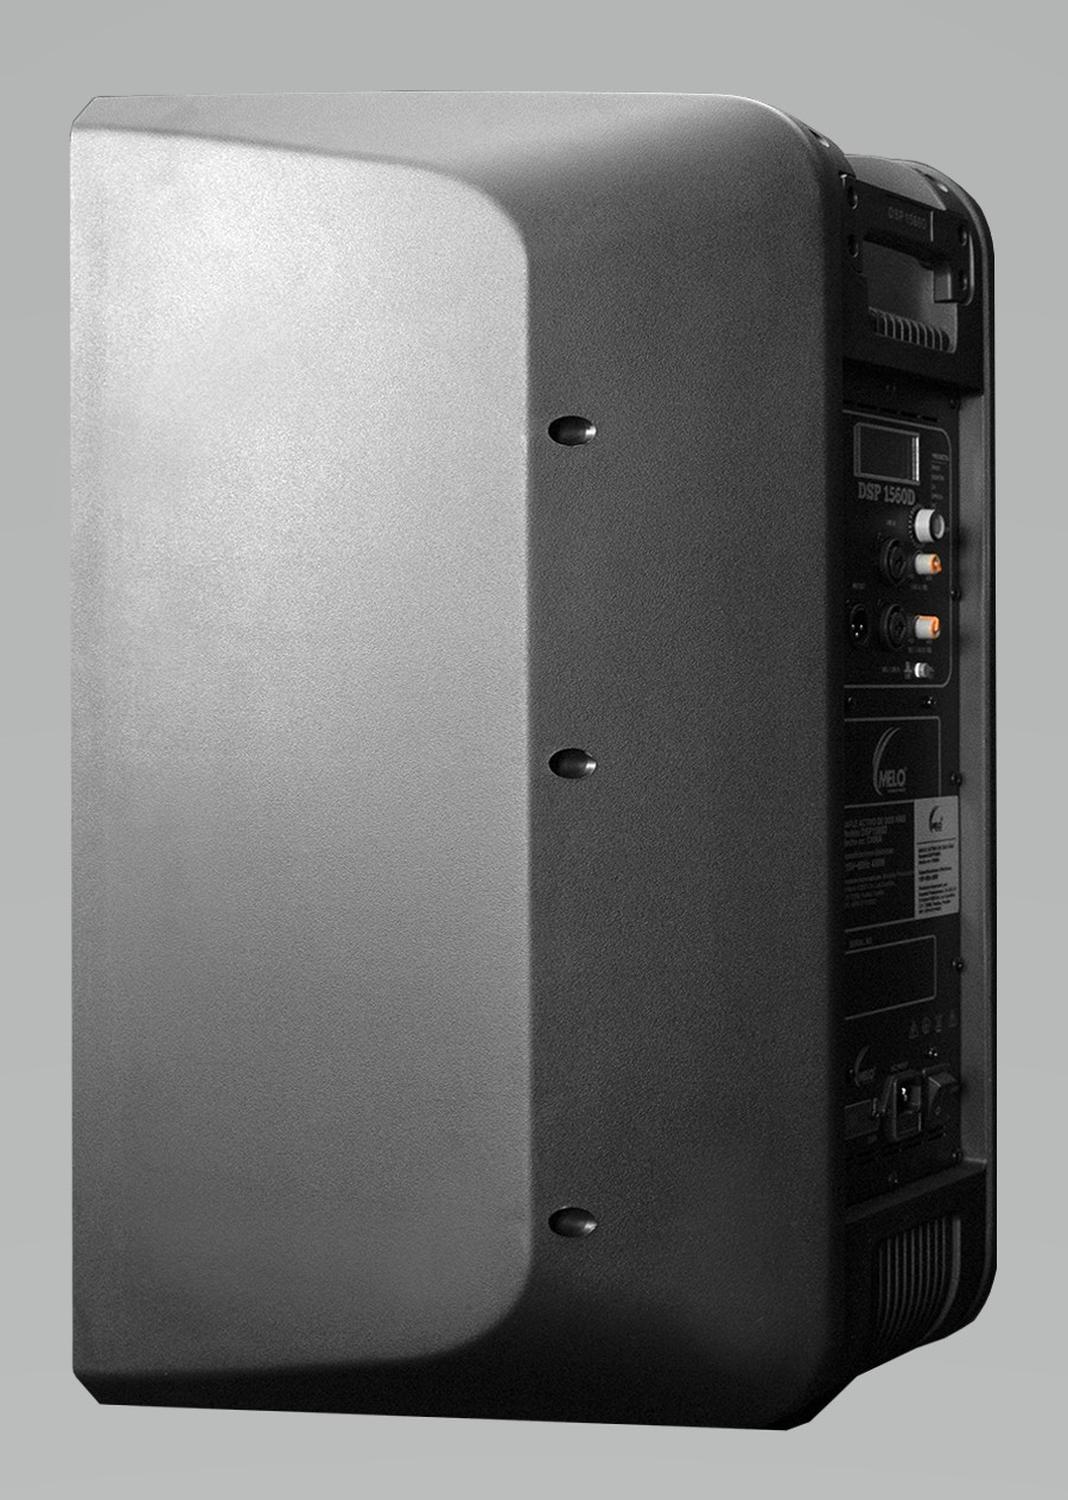 Yamaha amplificador Hifi A670 color negro – Sonoritmo Audio profesional e  Intrumentos musicales